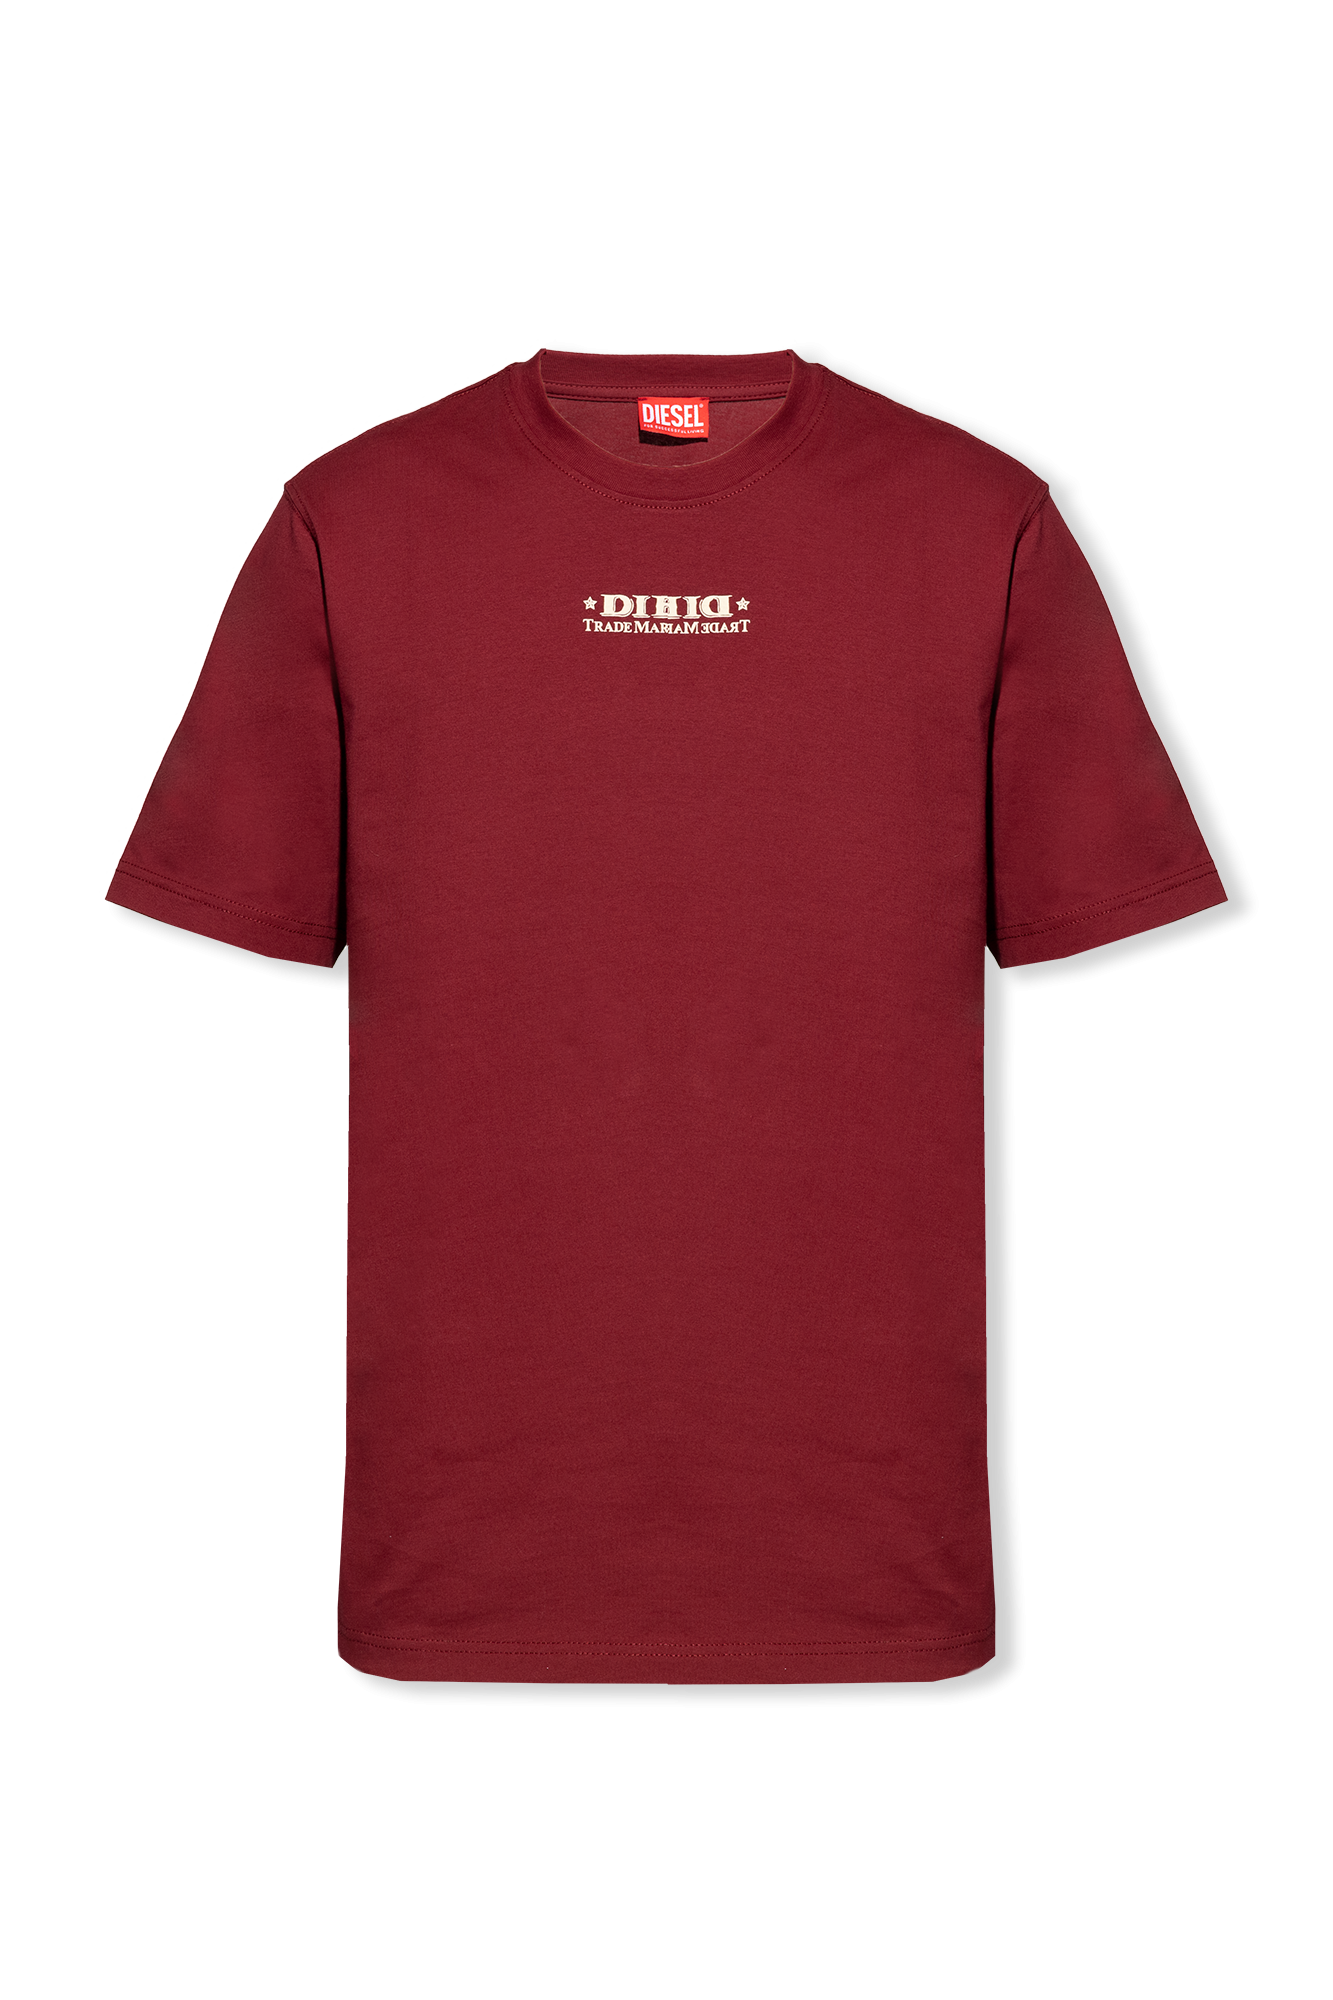 Diesel 'T-JUST-L4' T-shirt, Men's Clothing